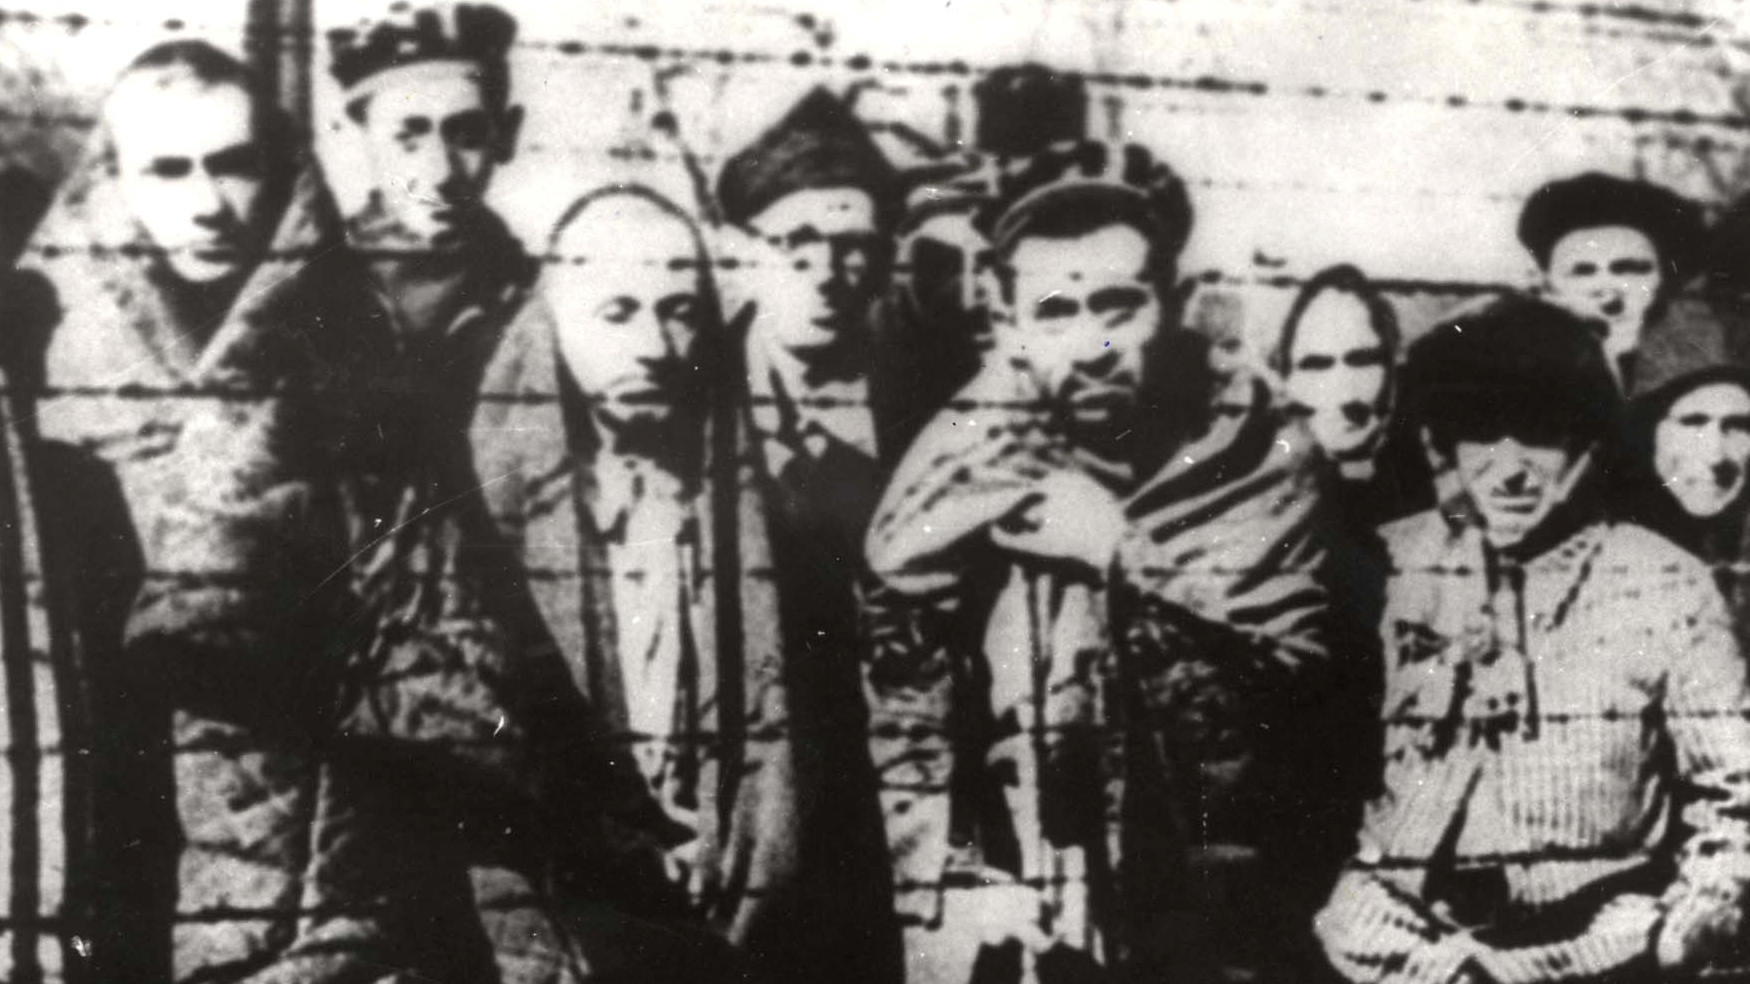 Sobrevivientes del Holocausto el día de la liberación del campo de exterminio nazi i(Yad Vashem Archives/REUTERS)